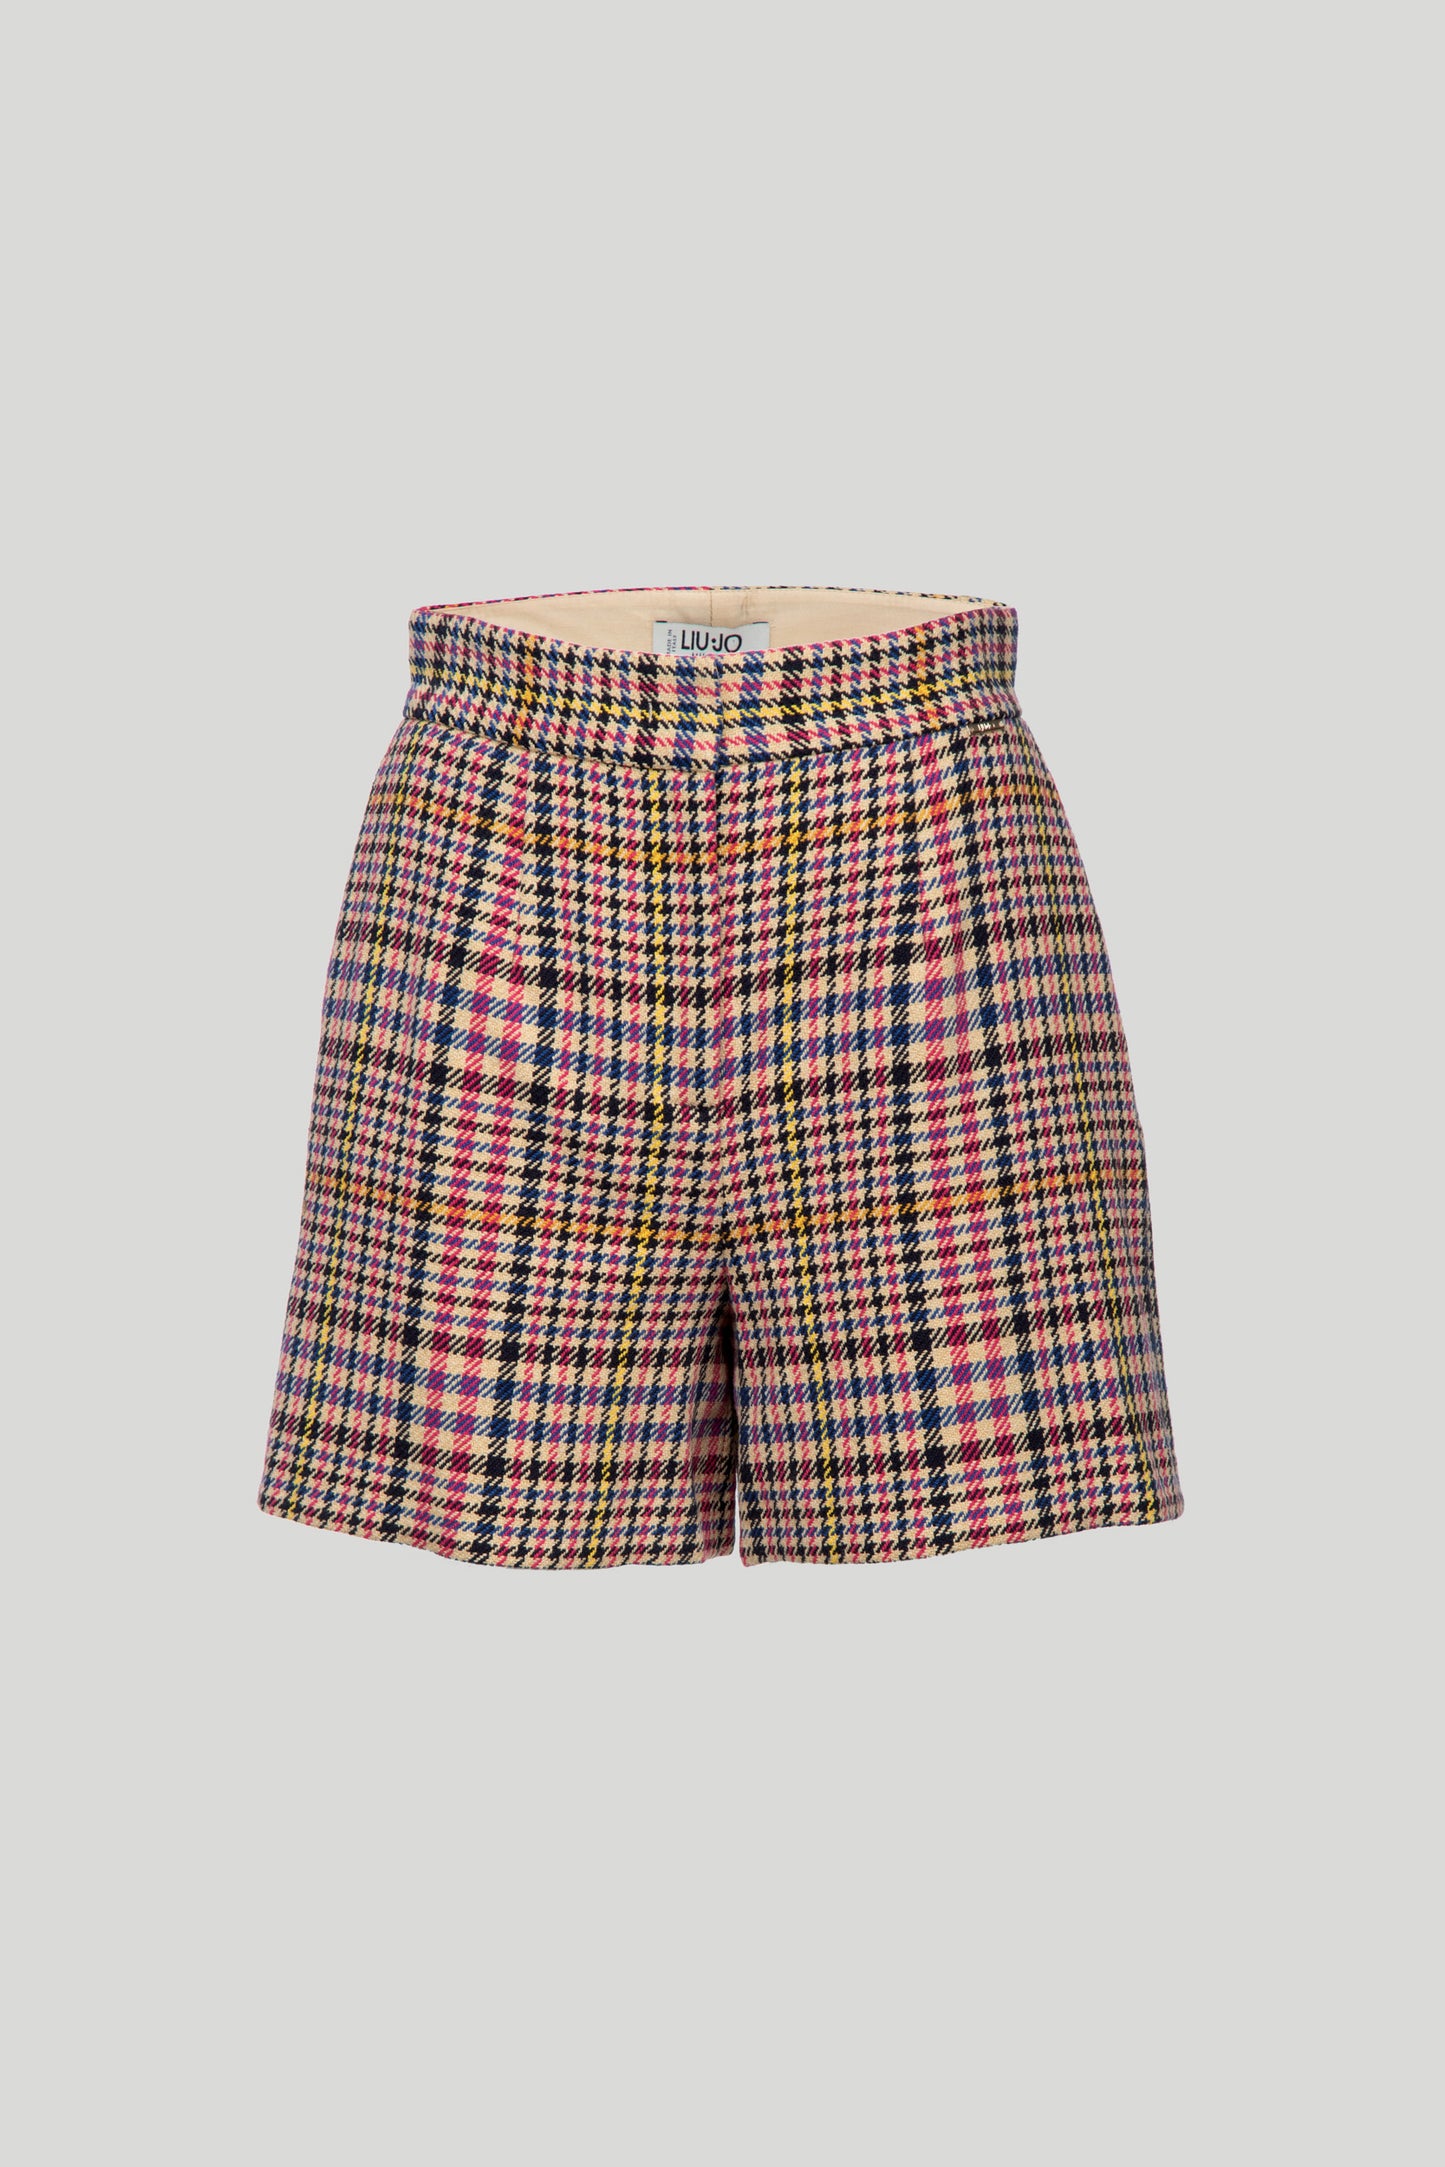 LIU JO Shorts in Tartan